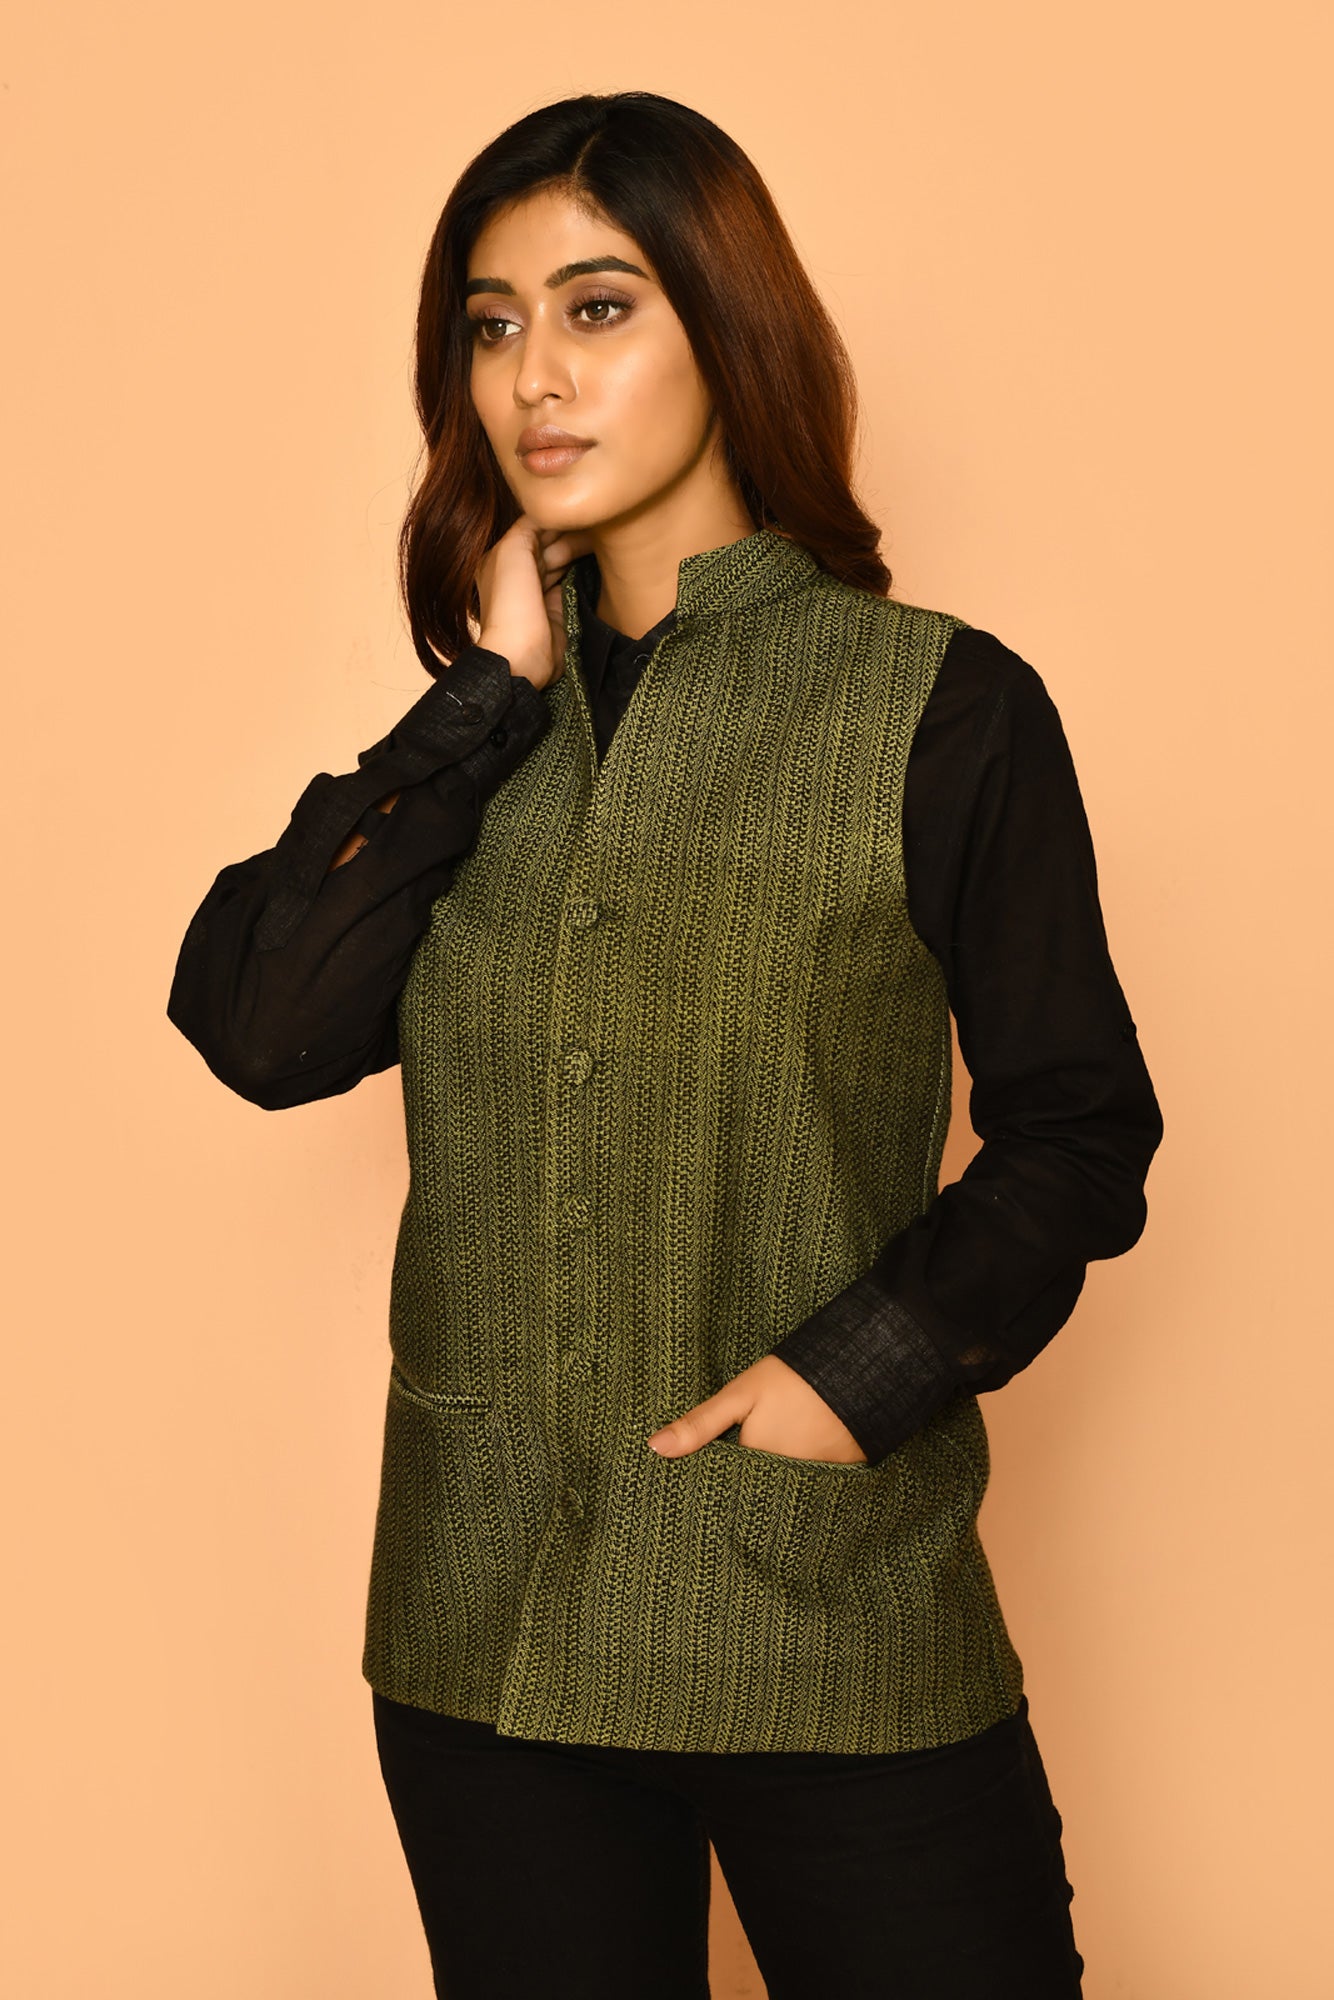 Wear kurta with this handloom cotton Nehru jacket for elegant ladies office wear 